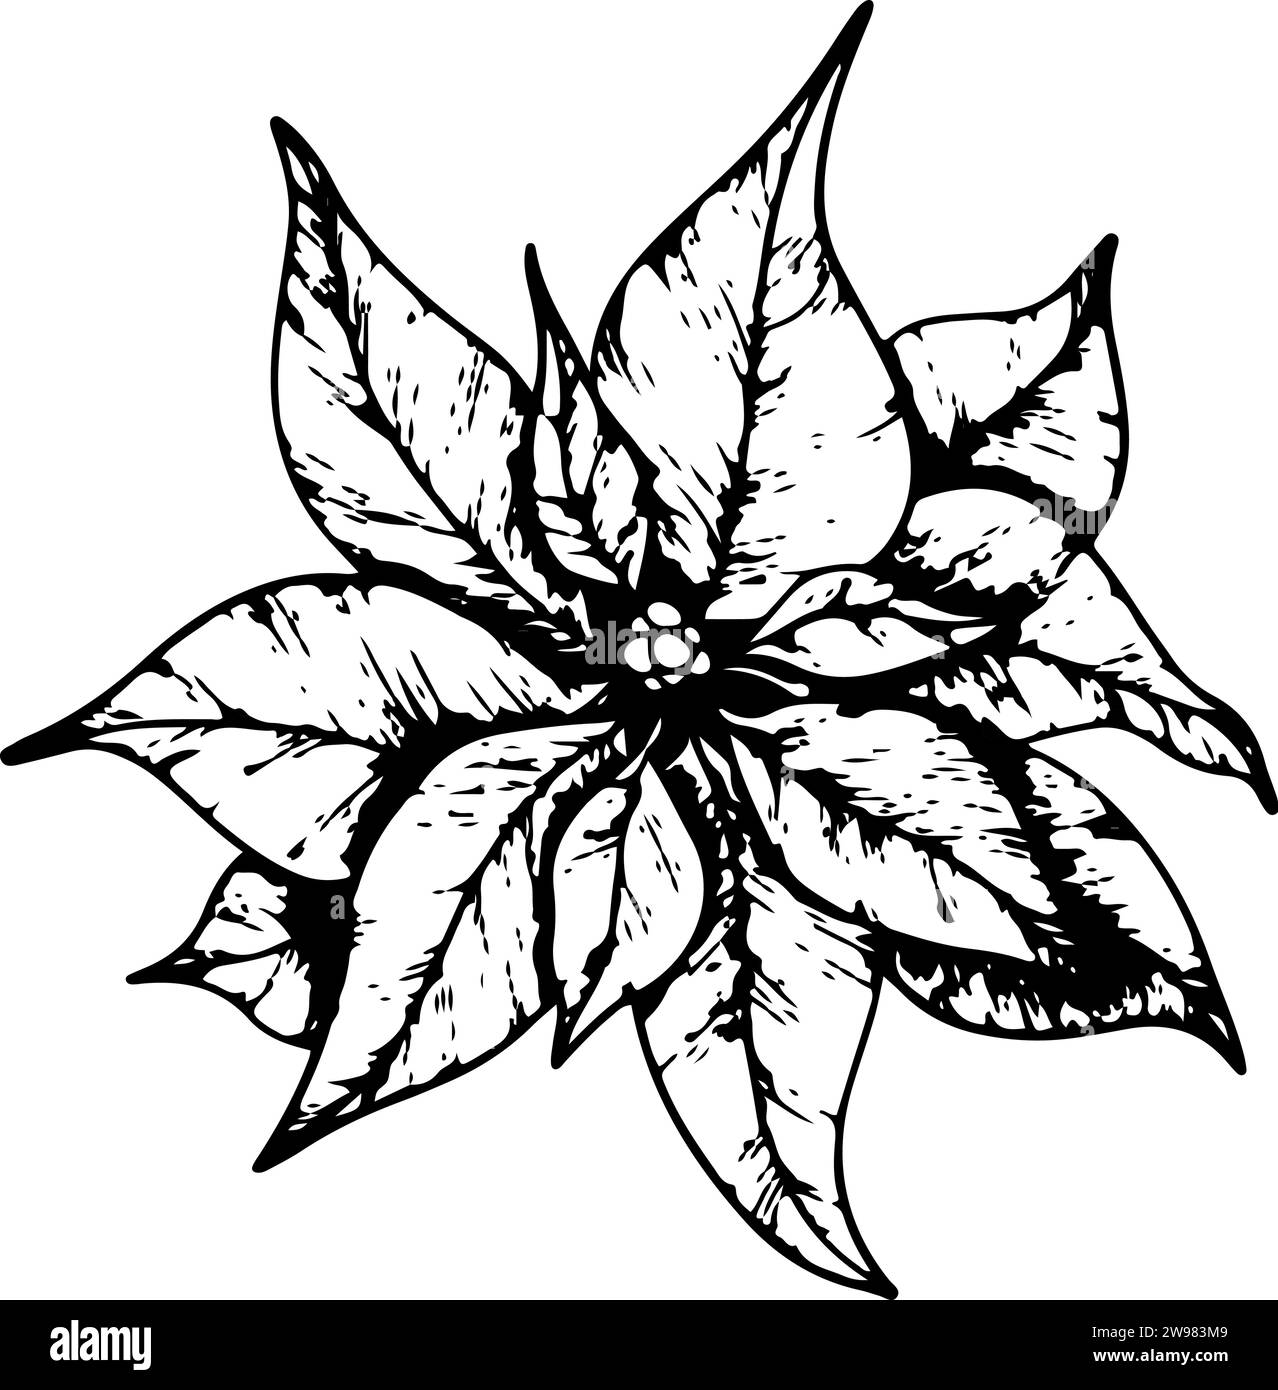 Fiori di Poinsettia, fiore di stella invernale. Elemento artistico della linea botanica. grafica dell'inchiostro. Illustrazione dipinta a mano per il saluto di Natale o Capodanno Illustrazione Vettoriale